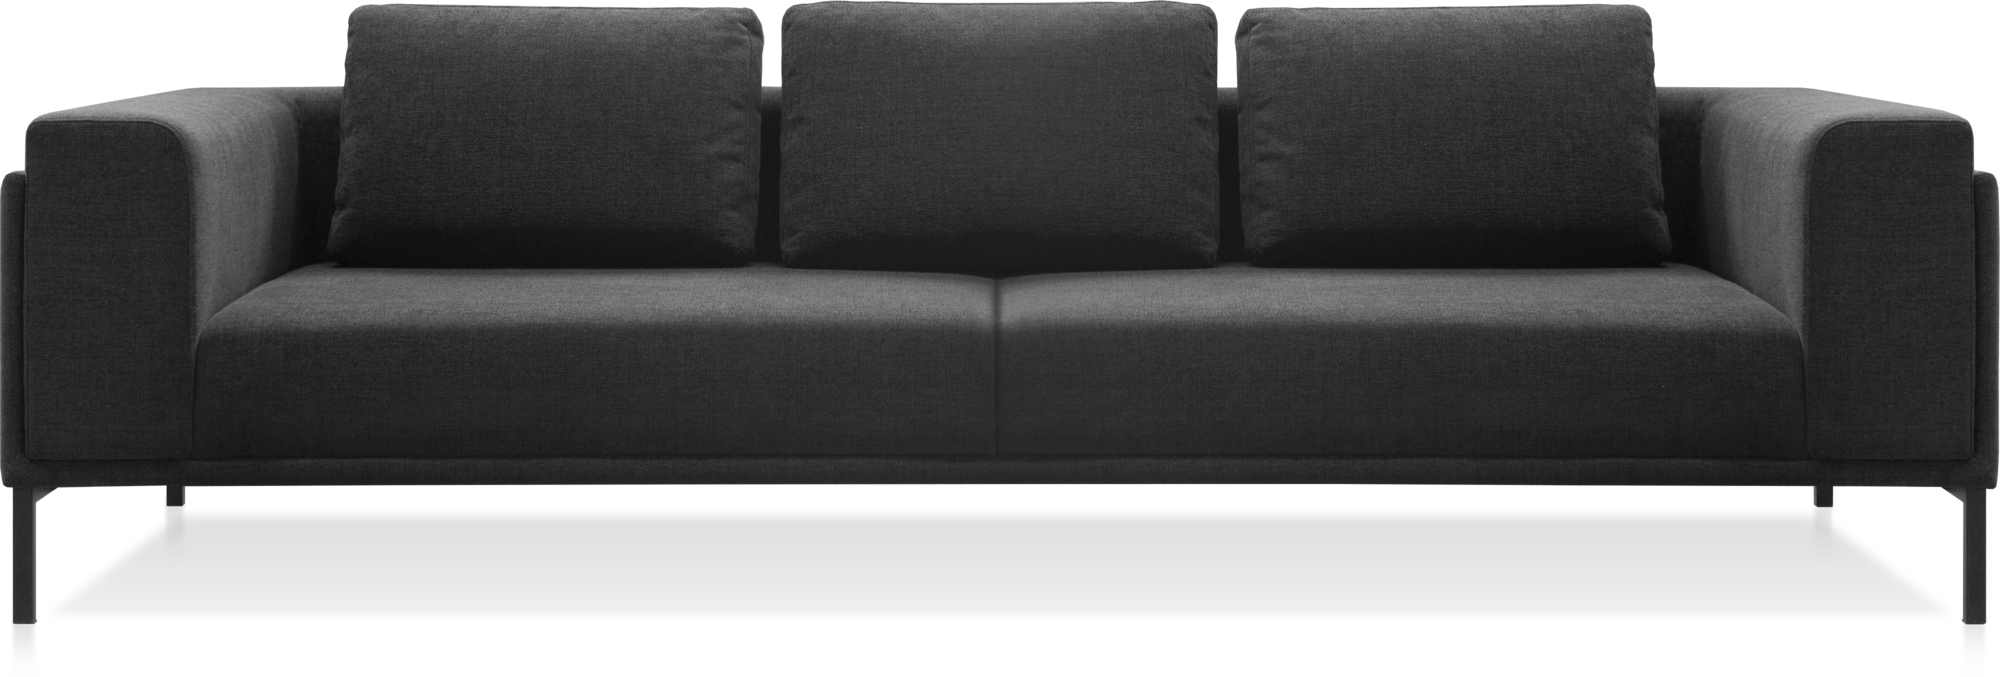 Zofi sofa